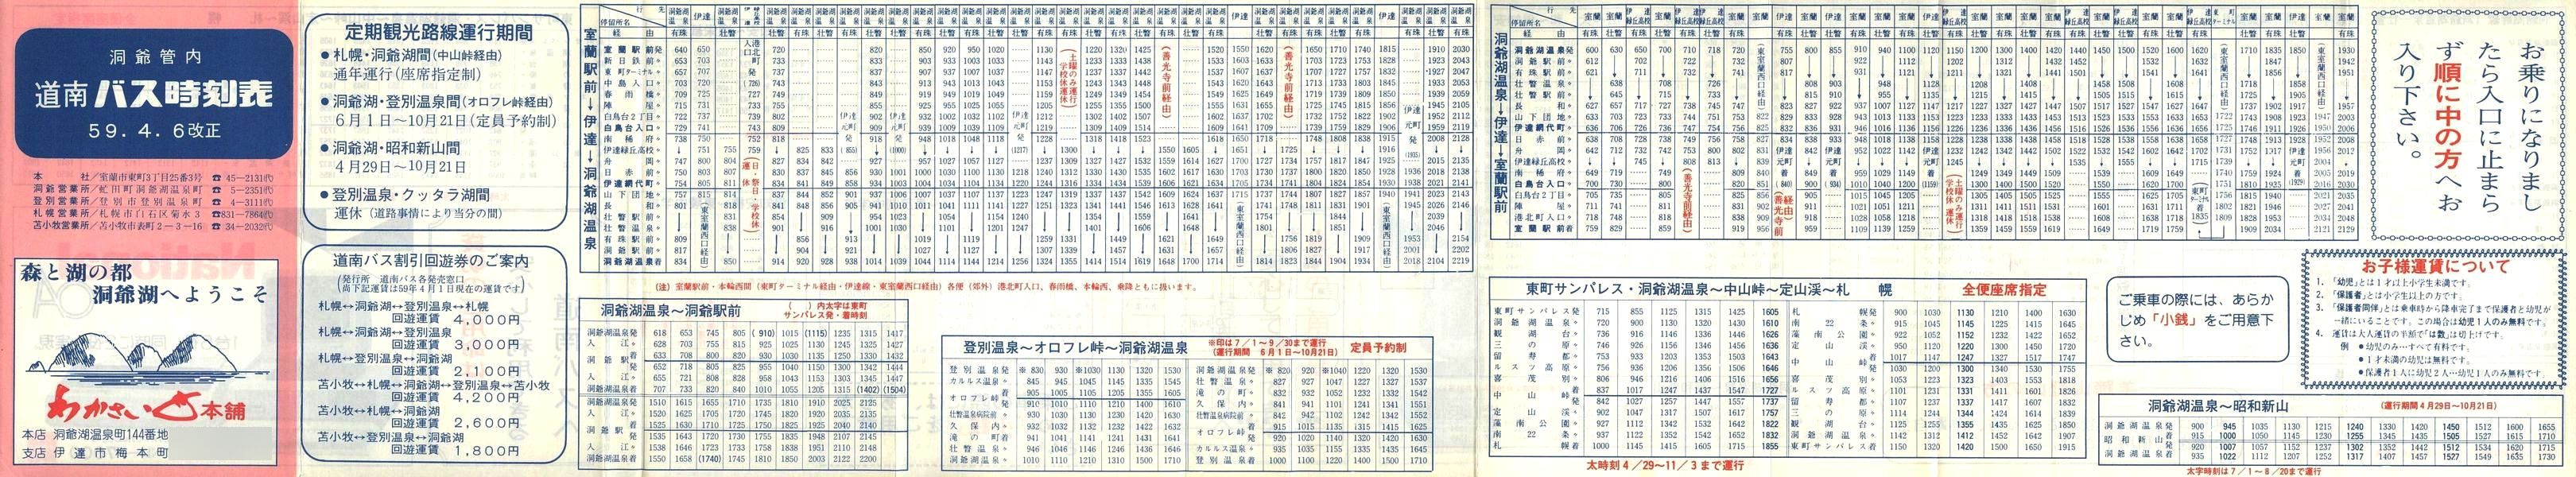 1984-04-06改正_道南バス_洞爺管内時刻表表面